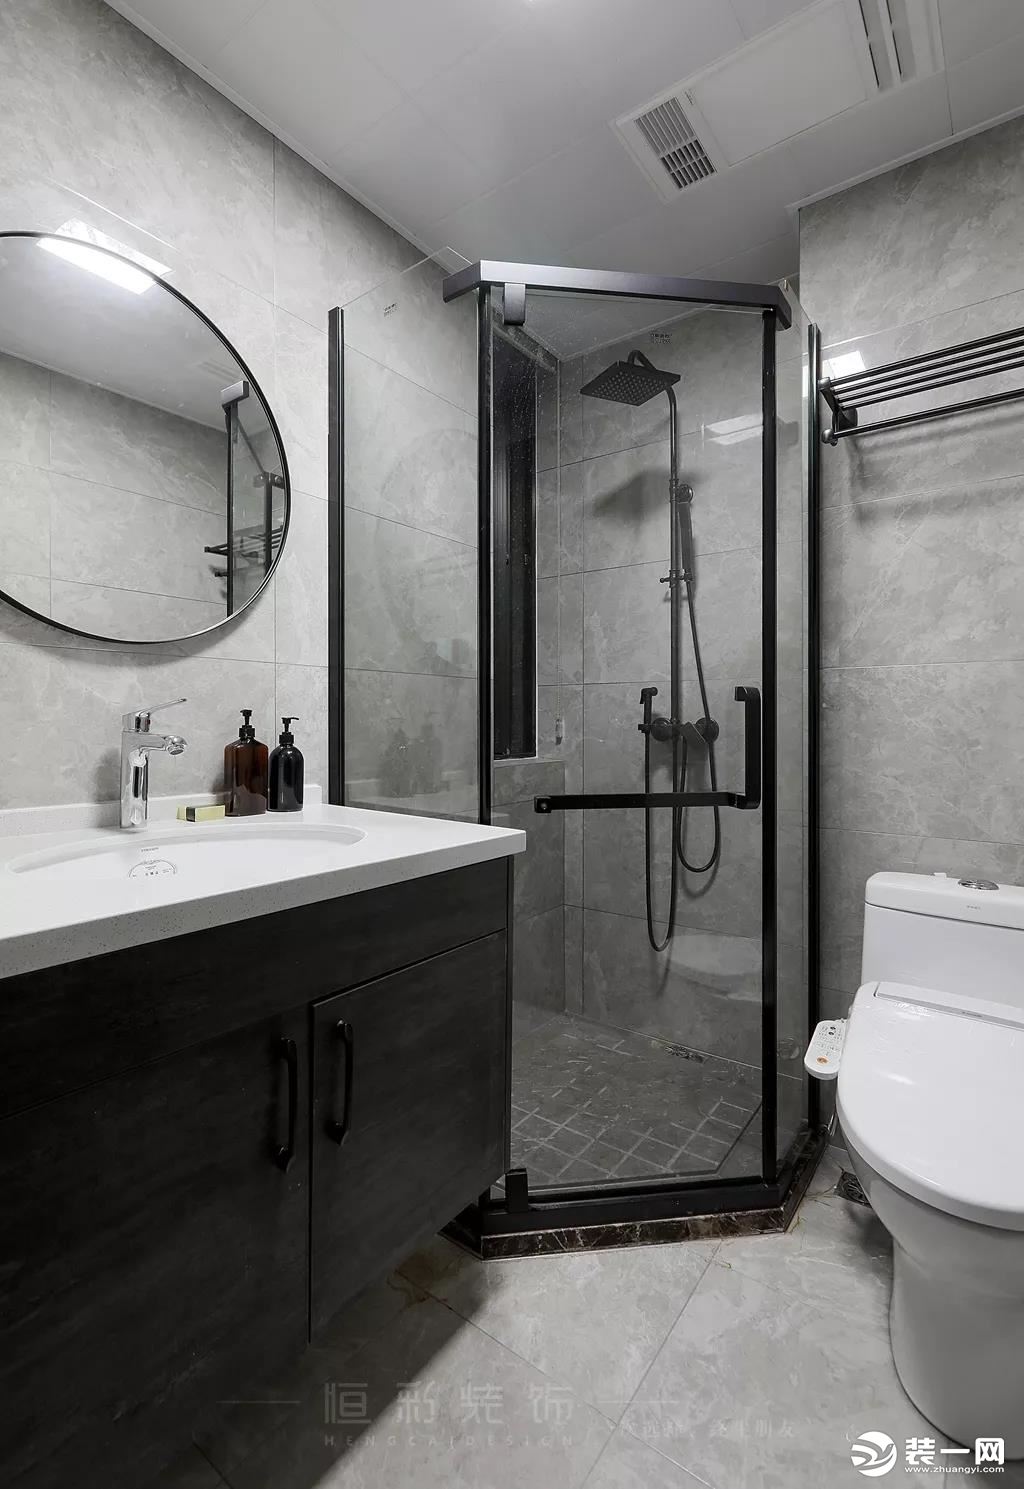 卫生间整体选用黑白灰色系配色，黑色淋浴房门框搭配黑色台盆柜，黑色边框圆镜点缀让空间设计感更足。搭配浅